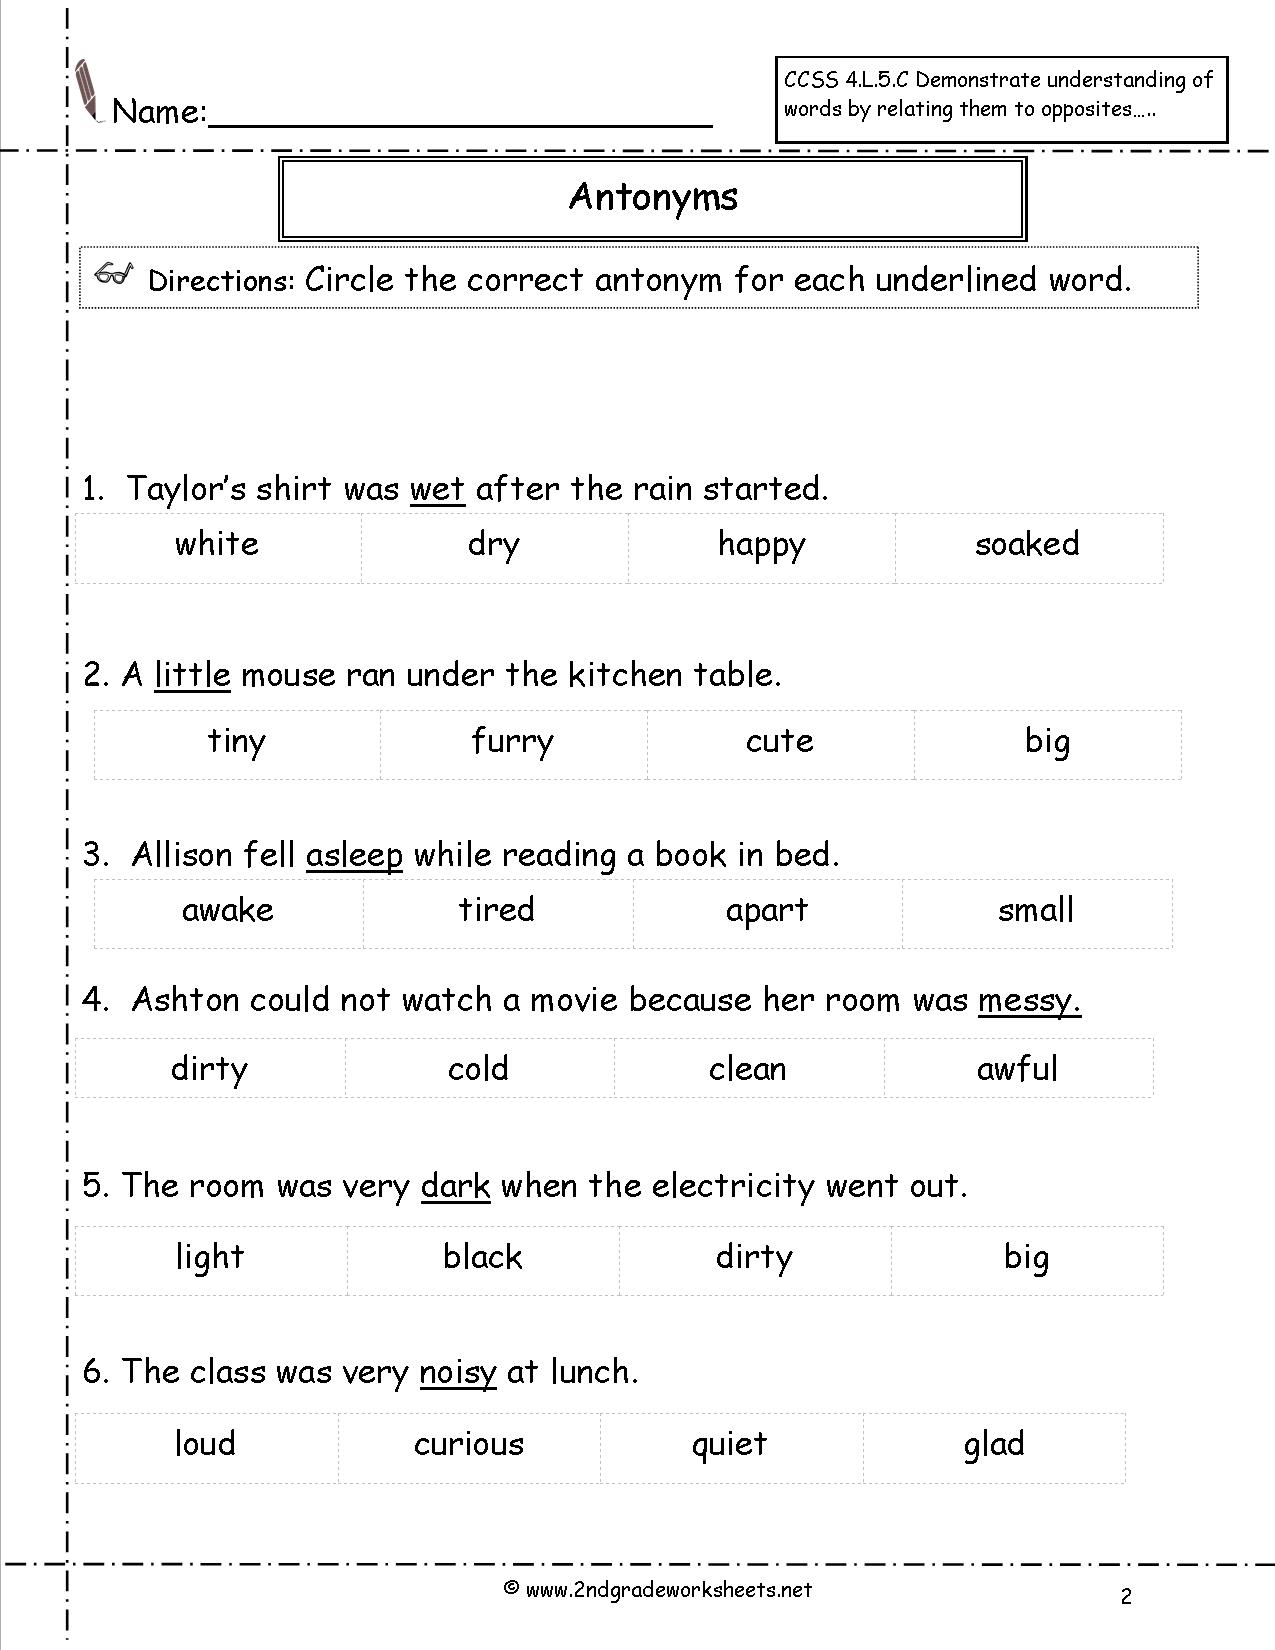 Antonym Worksheets For 1st Grade 1219011